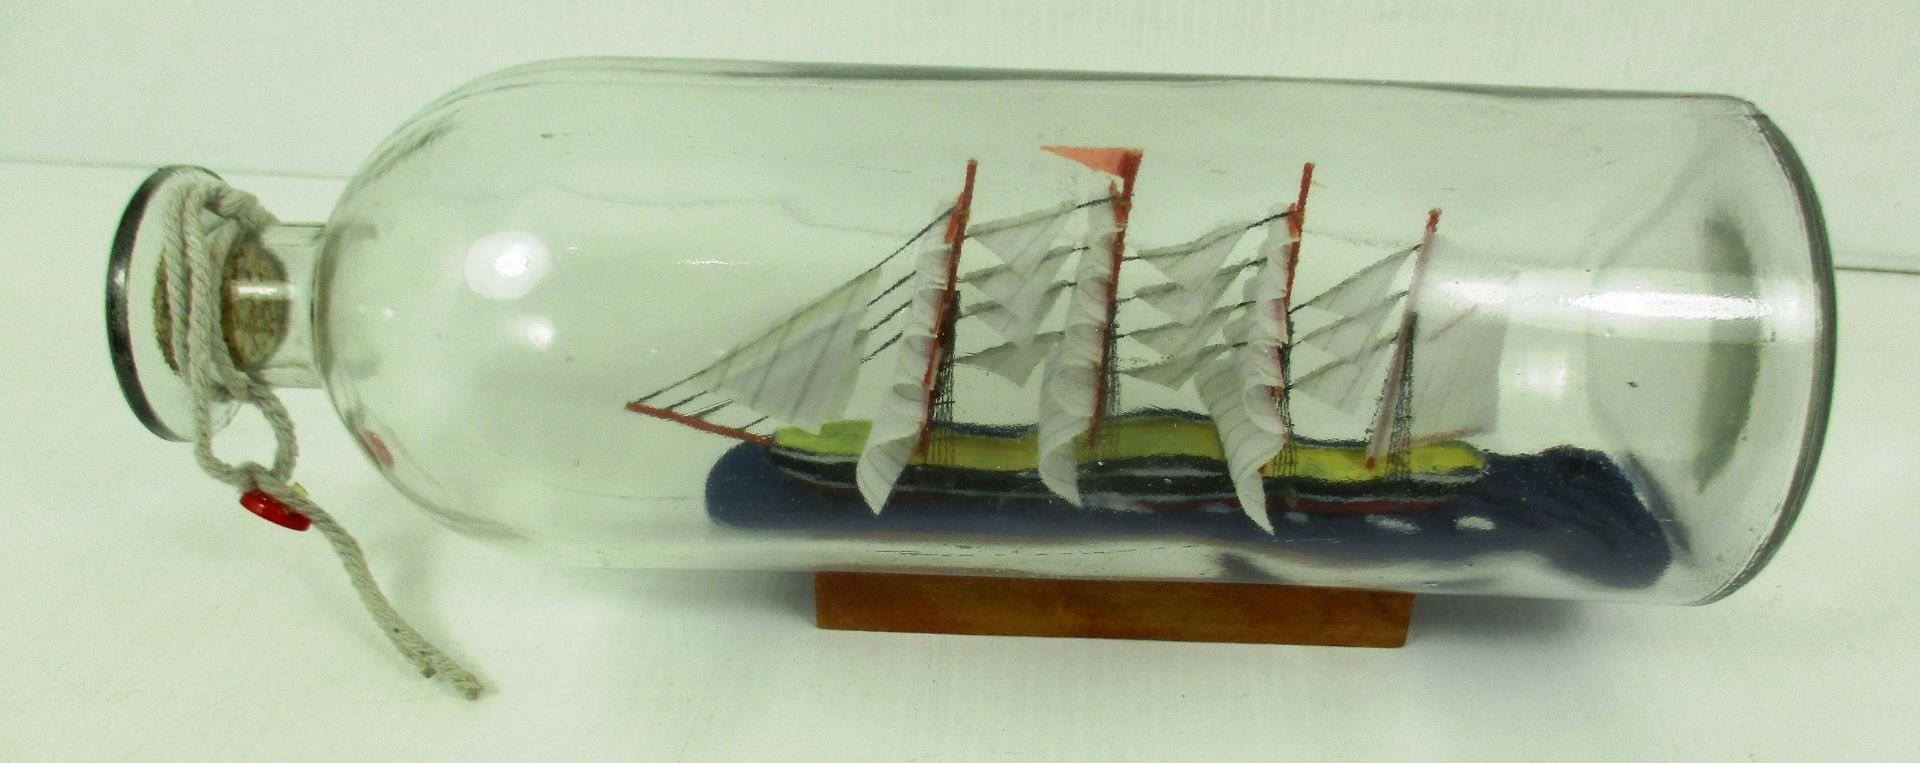 A Ship in a bottle on wooden plinth